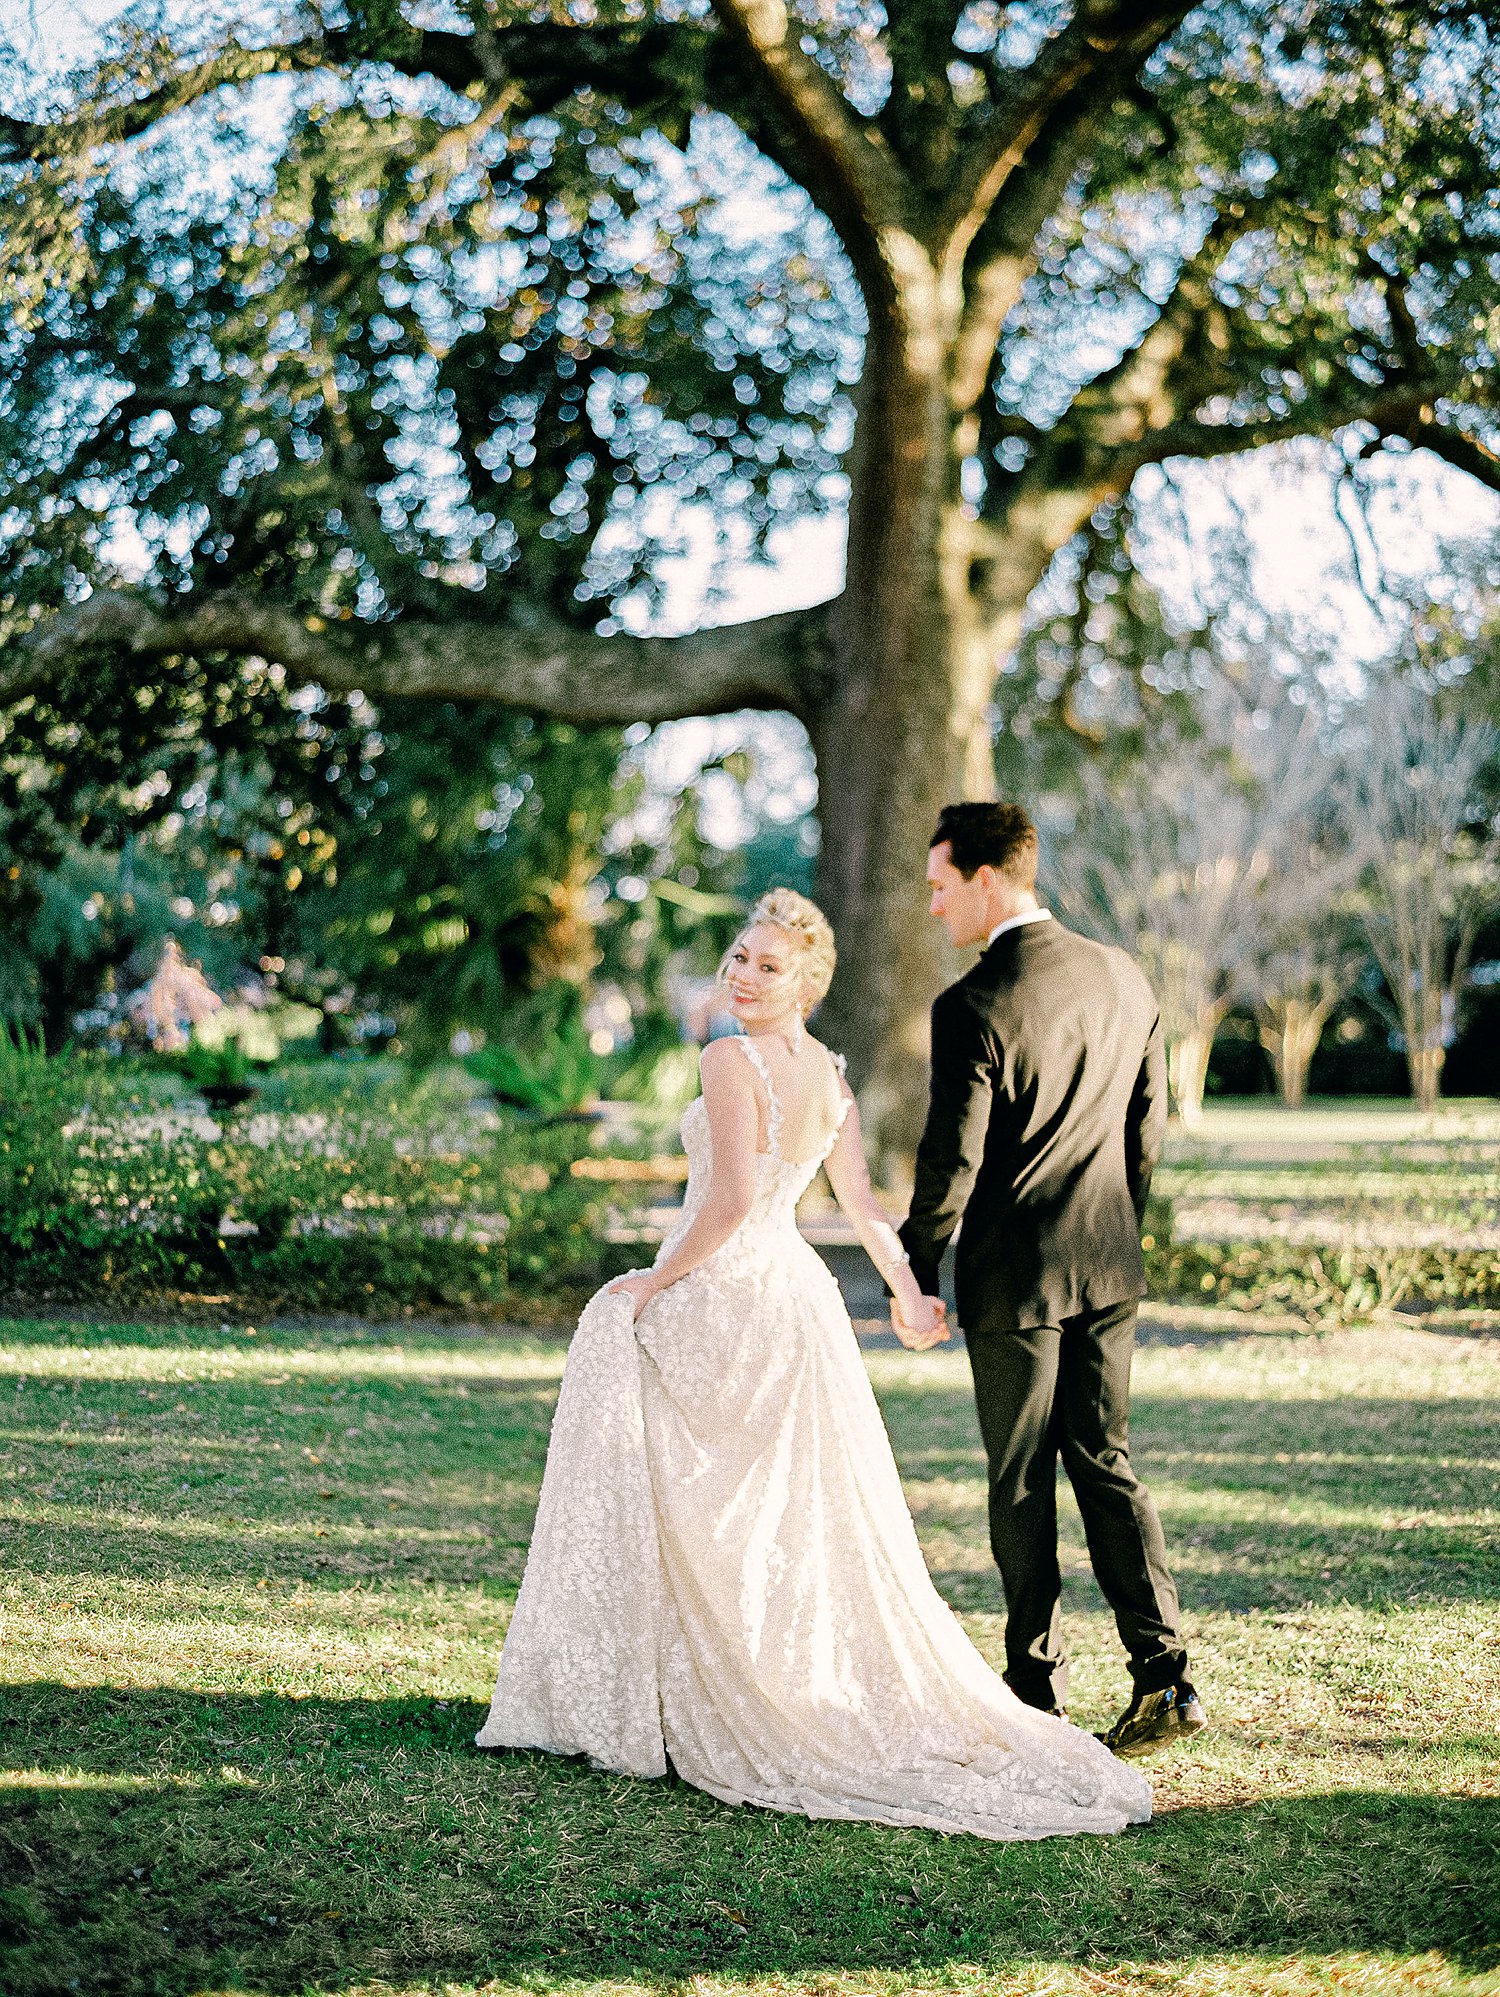 bride in white wedding dress walking with groom in black tuxedo in green garden